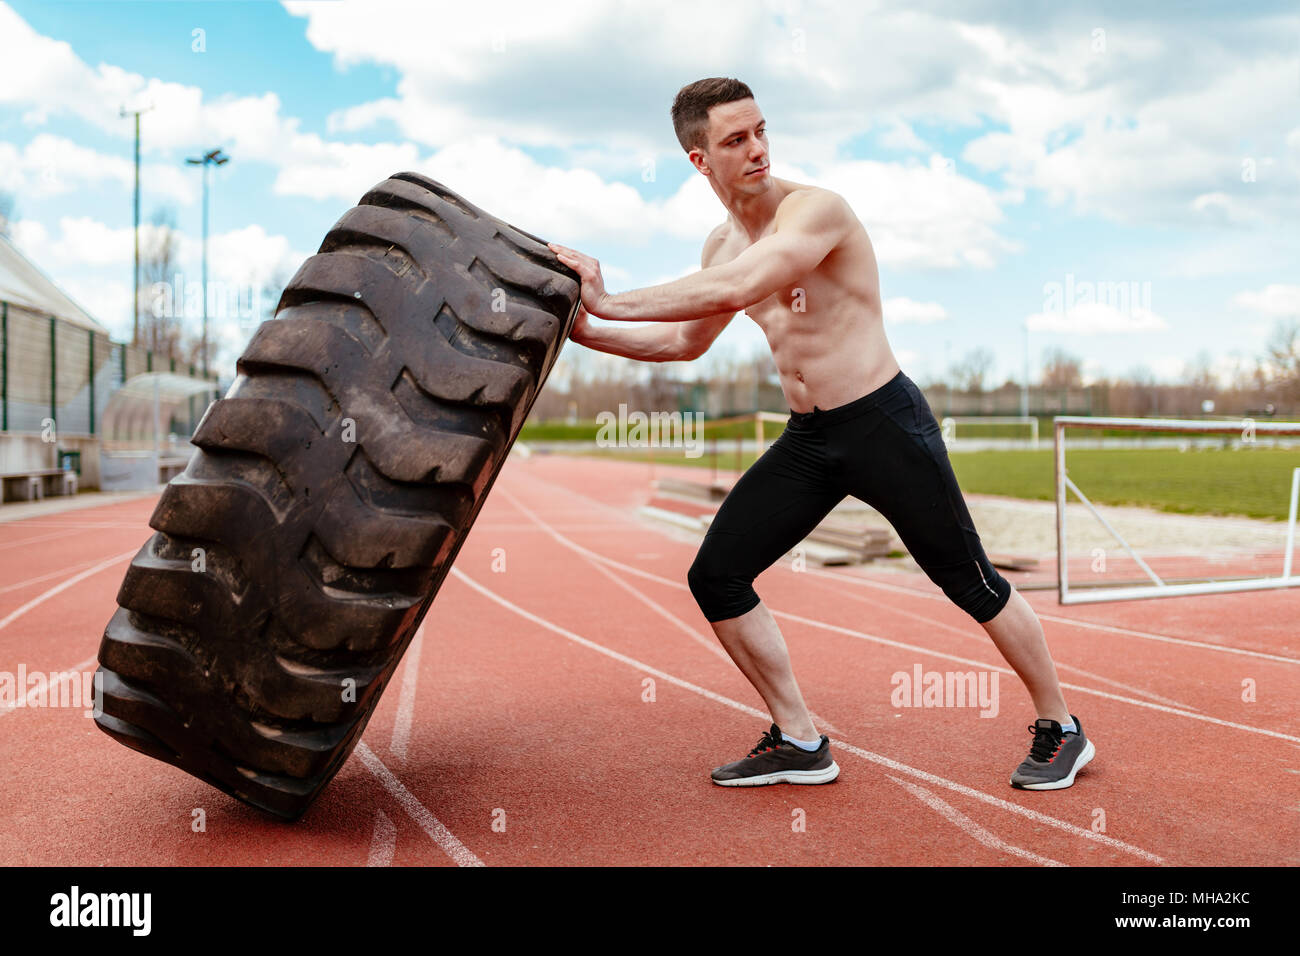 Junge muskulöse Mann oben schieben einen riesigen Reifen für Training Muskeln an der Tartanbahn auf dem Stadion. Stockfoto